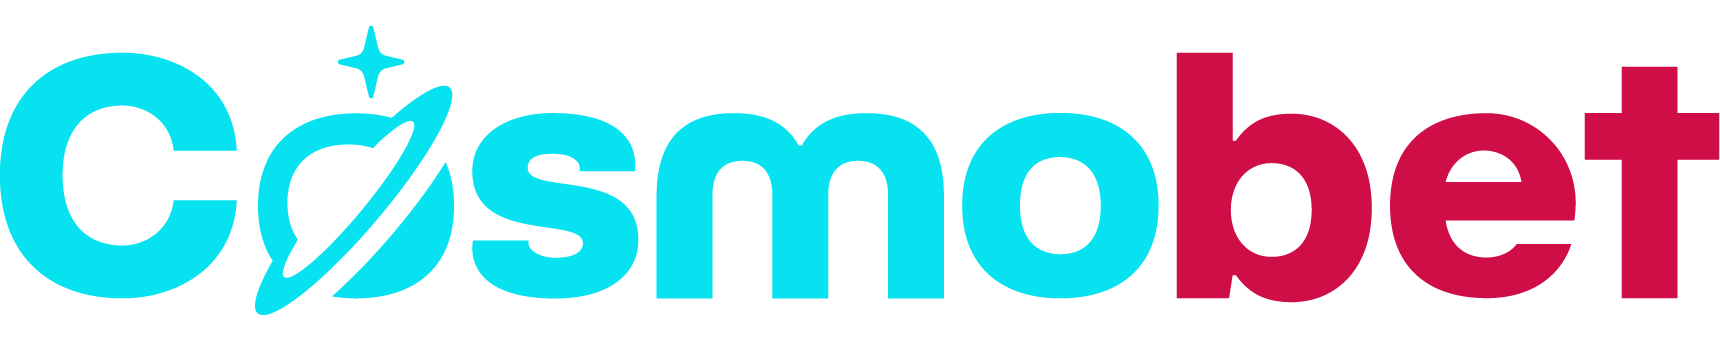 Cosmobet Logo